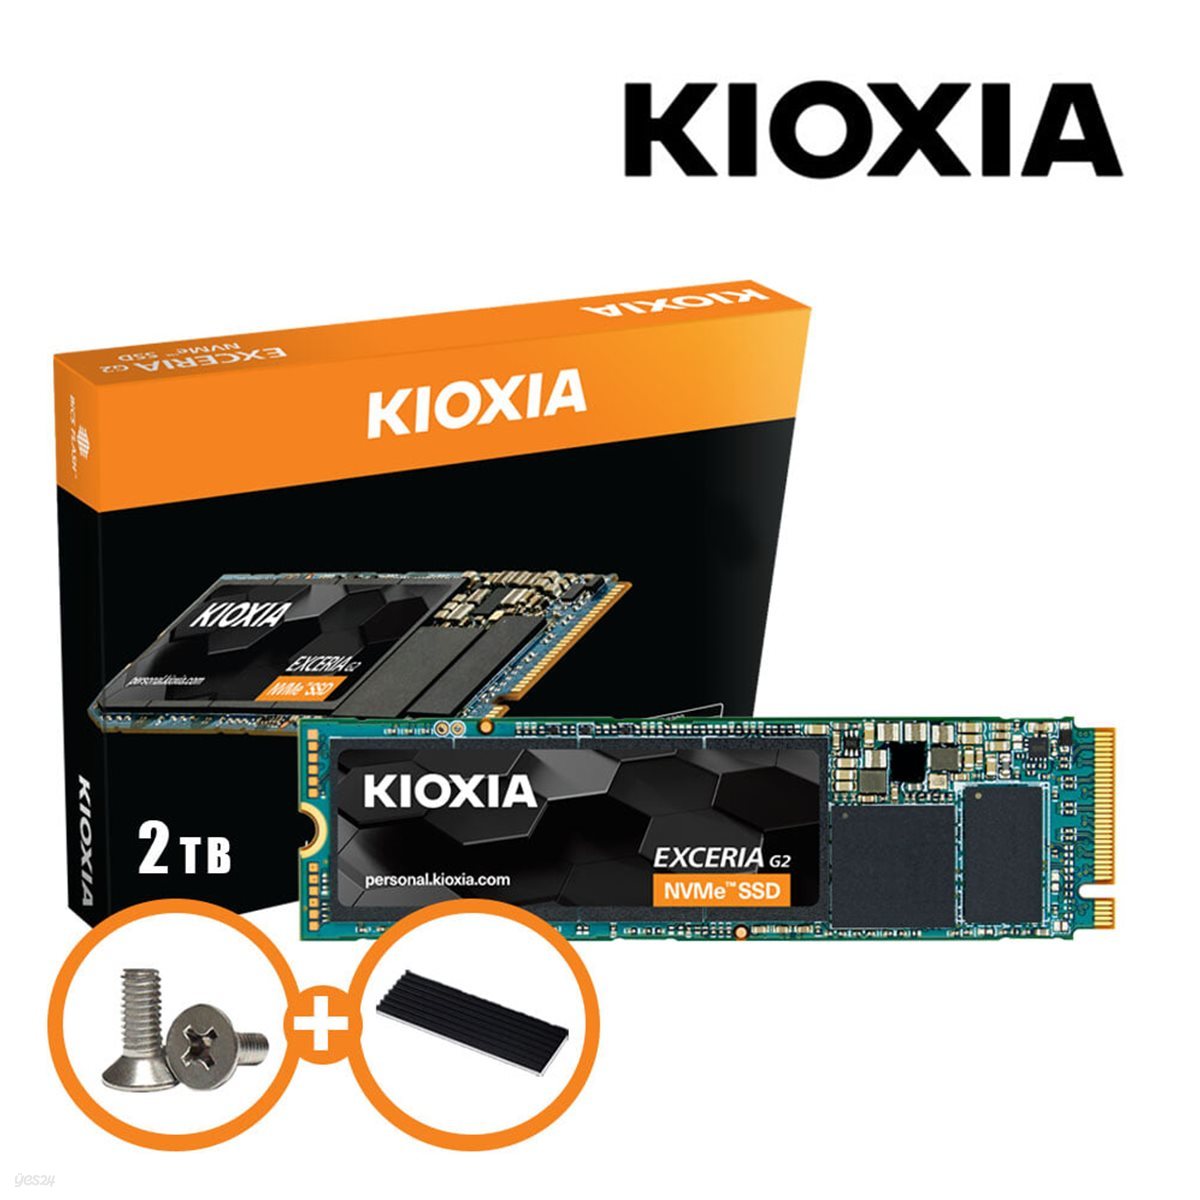 [키오시아 공식총판] 키오시아 액세리아 EXCERIA G.2 NVMe SSD 2TB